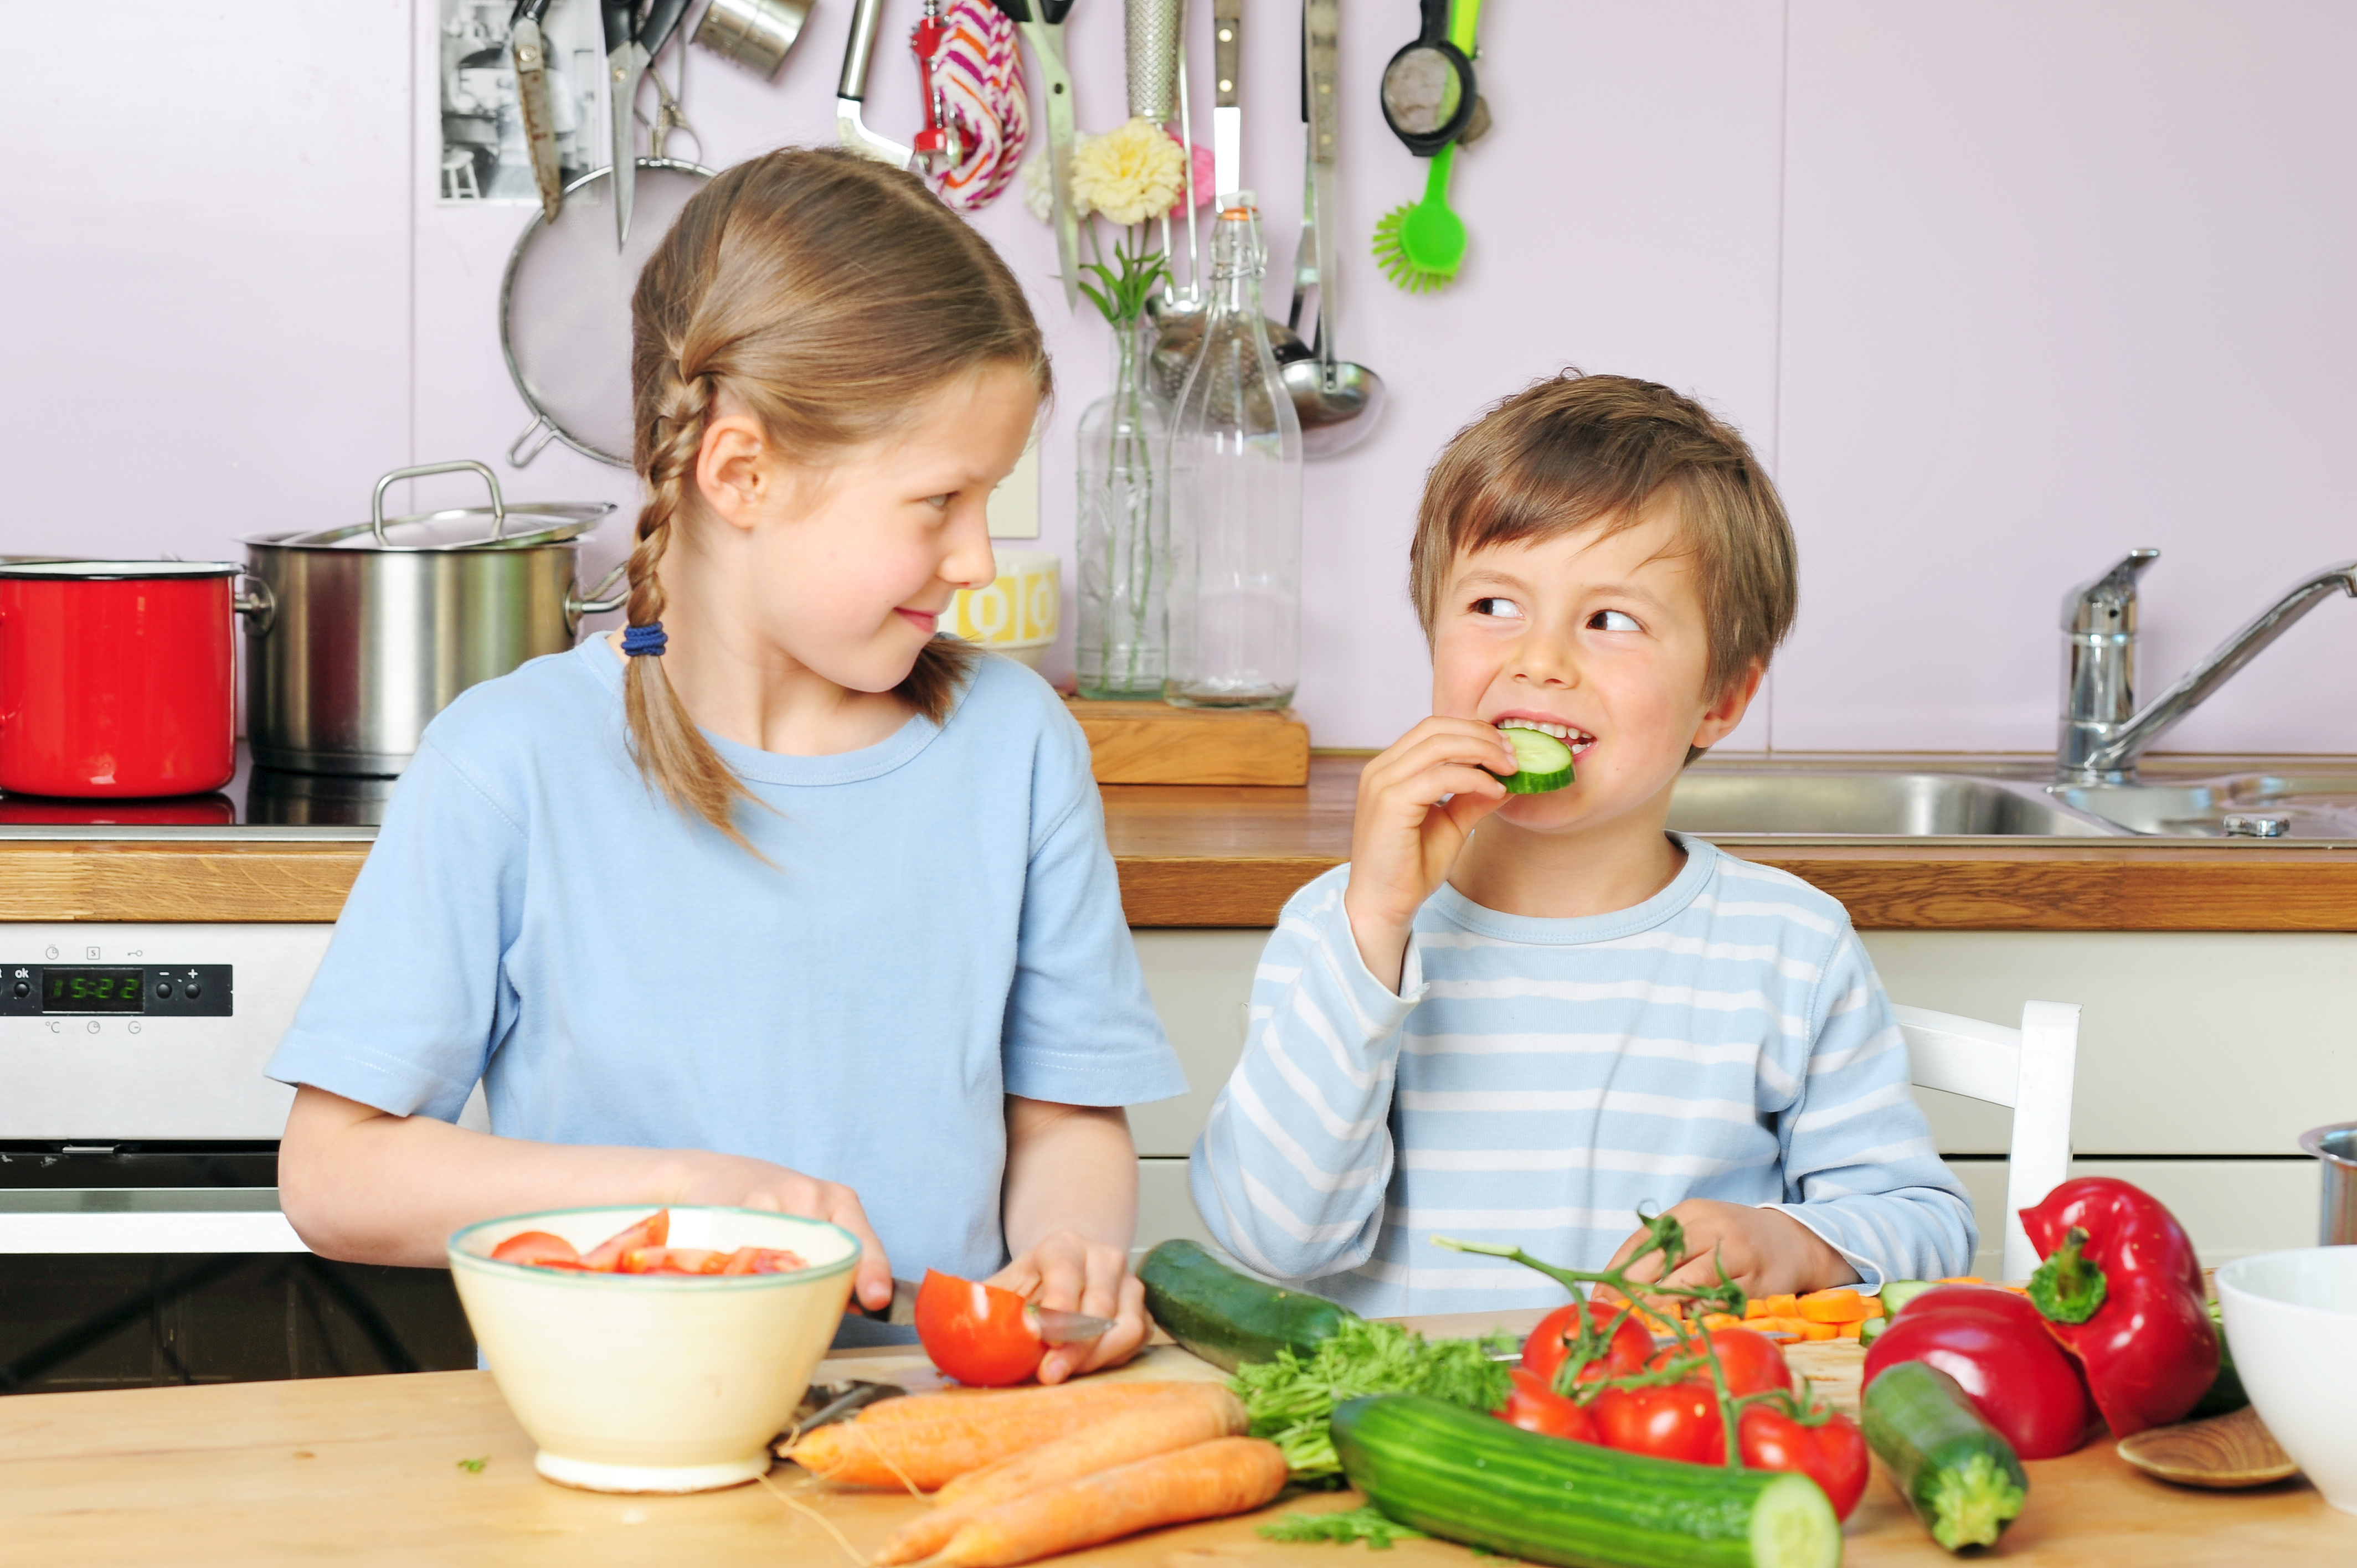 Das heutige Angebot an Obst und Gemüse konfrontiert unseren Körper mit weit mehr potentiell allergieauslösenden Stoffen.